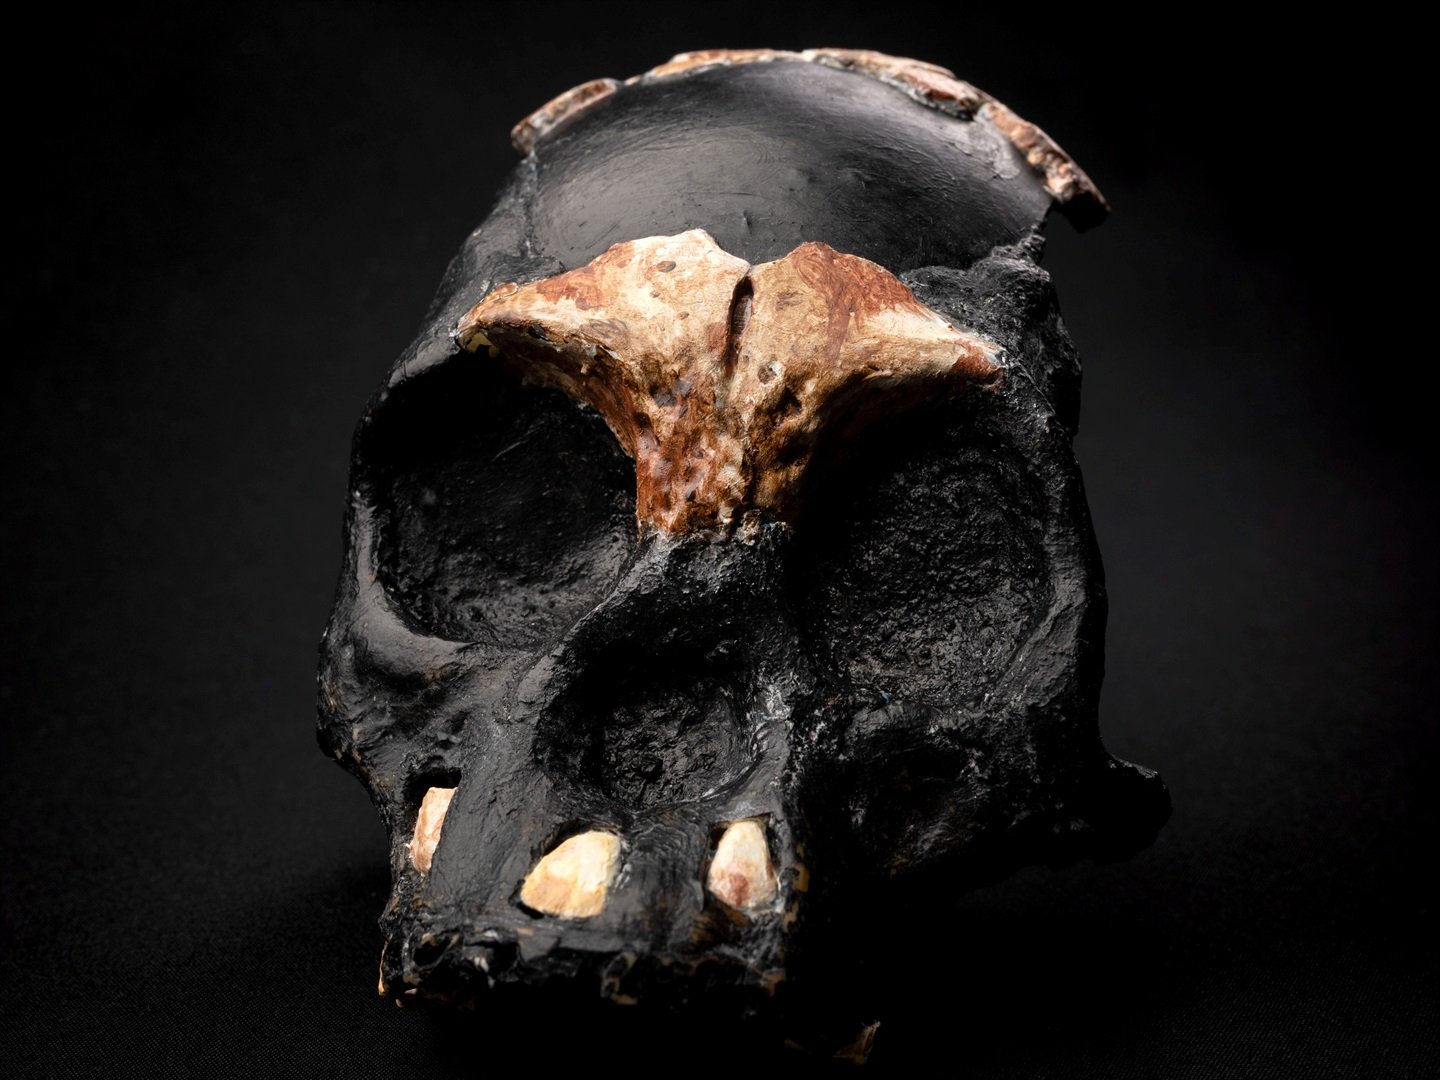 Güney Afrika'da bulunan hominid çocuk fosili